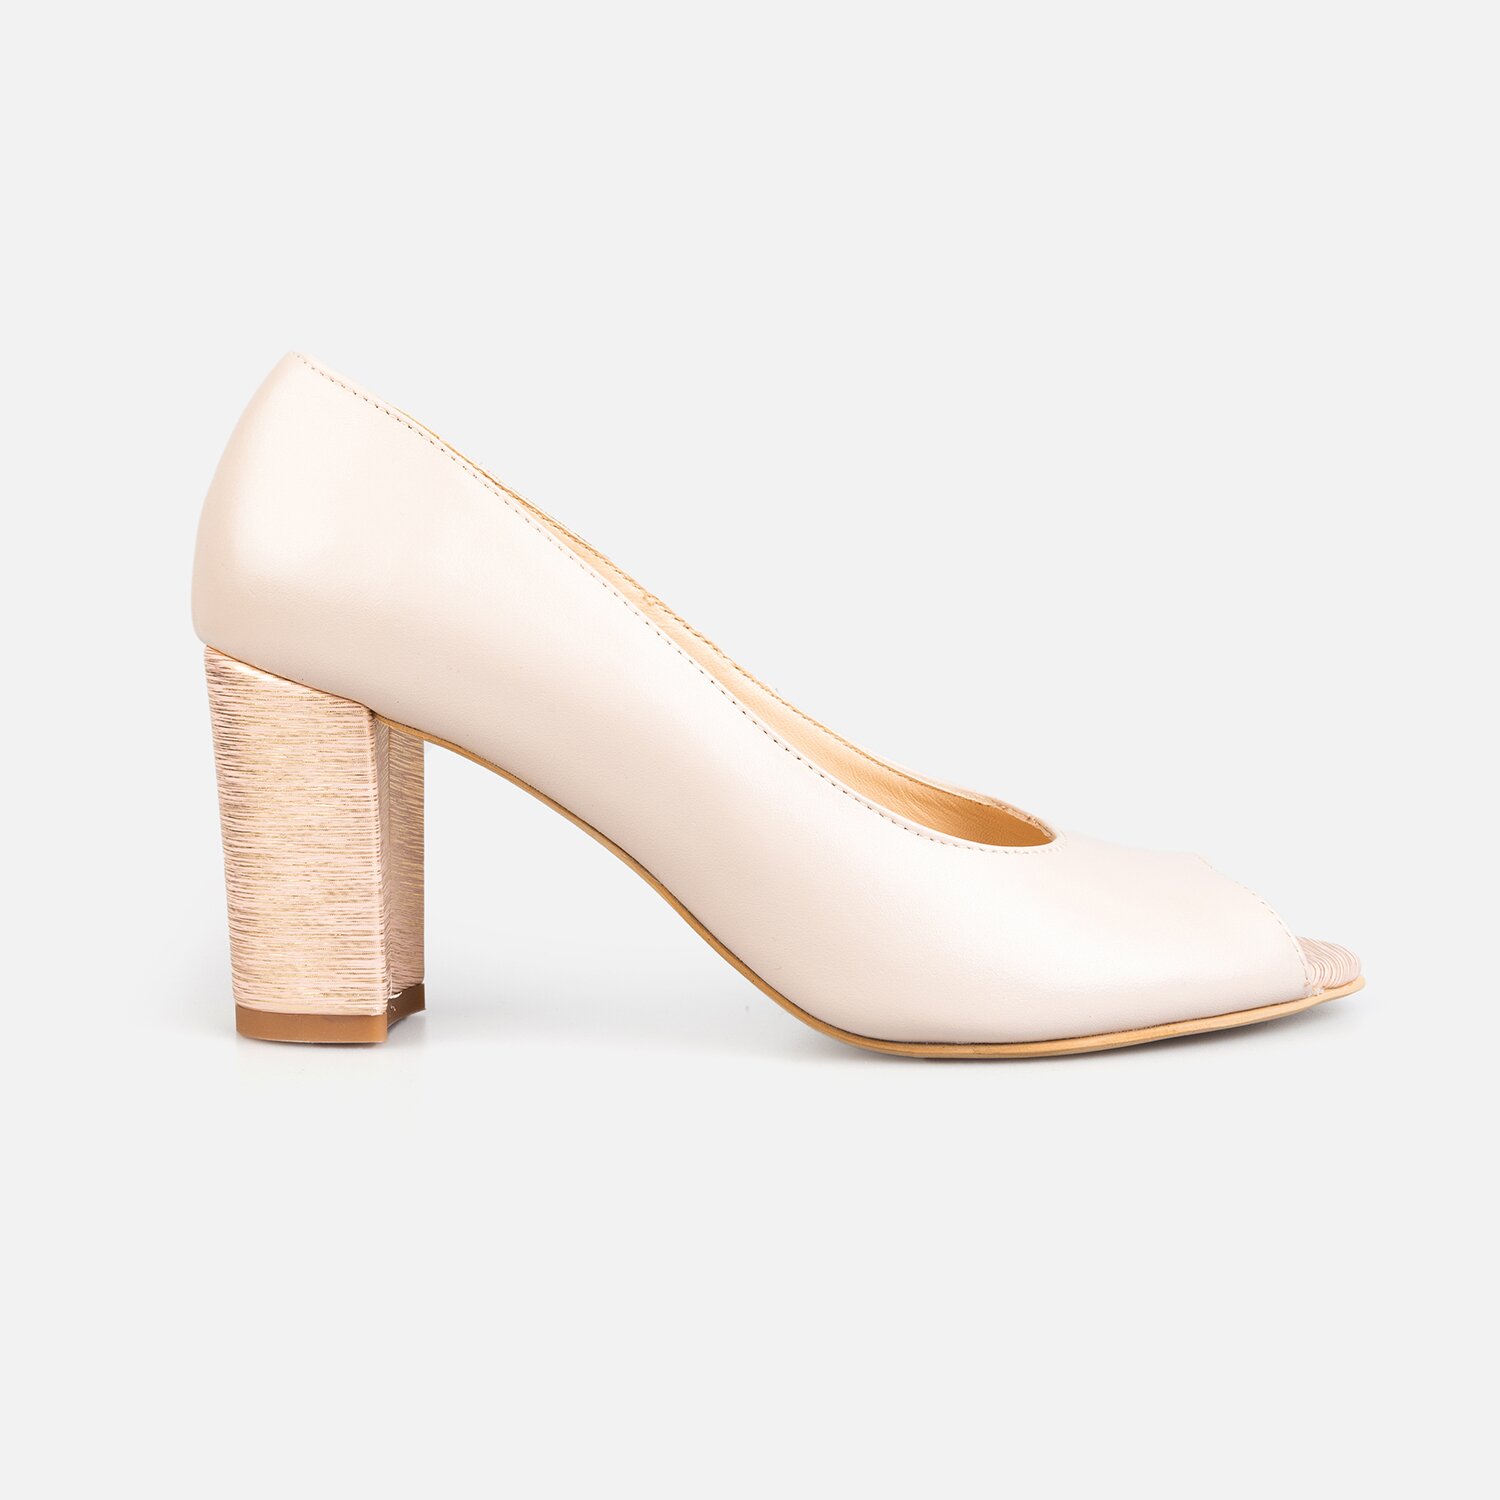 Pantofi eleganți damă din piele naturală - 176 Roz + Auriu Box